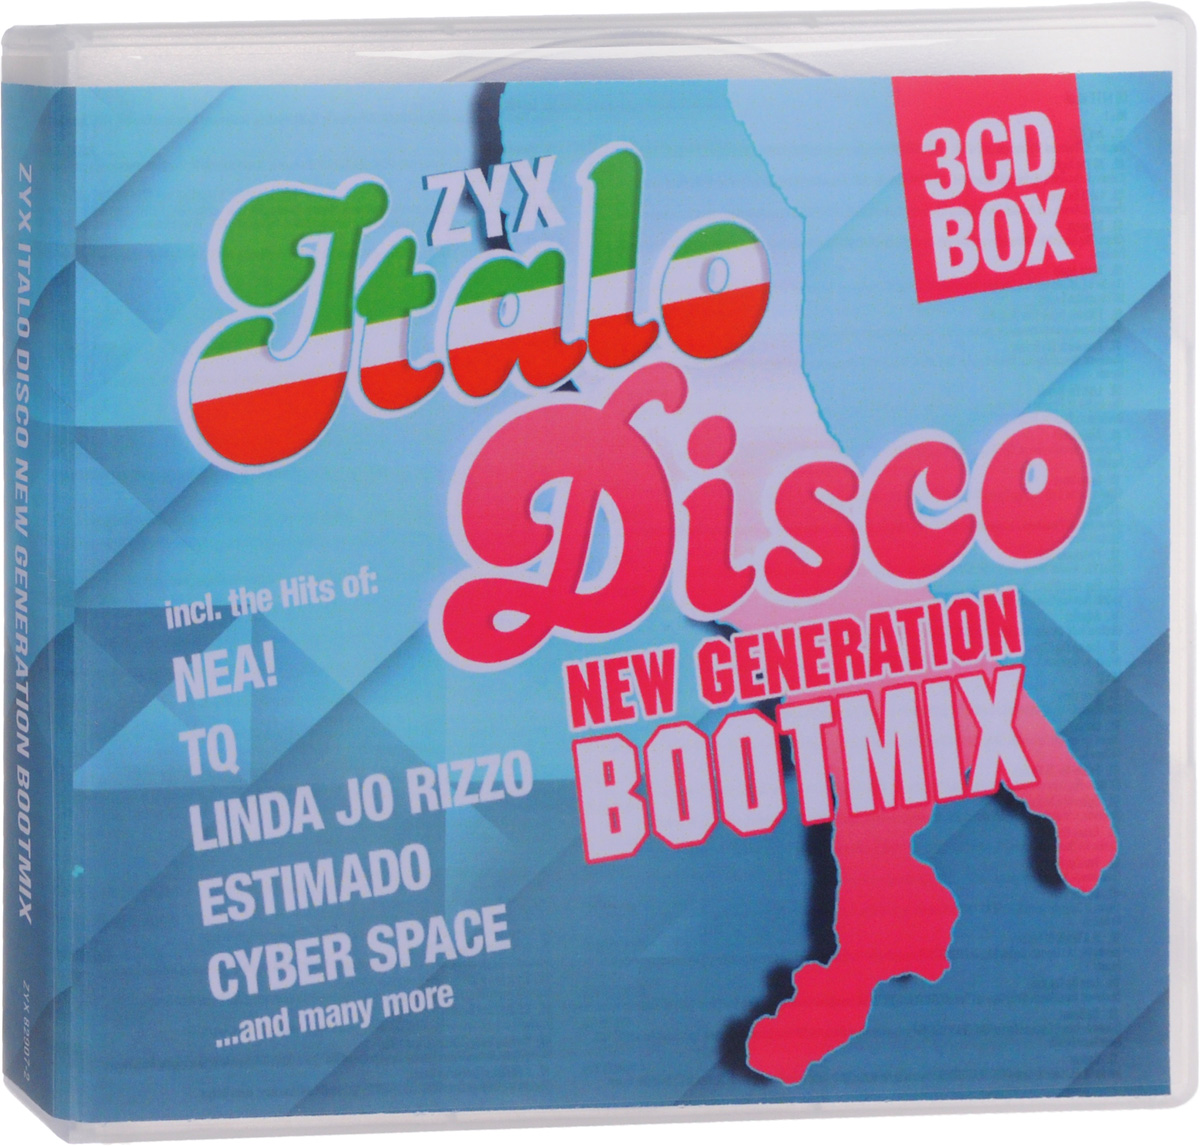 Zyx italo disco new generation 24. Italo Disco New Generation. Blue boy Italo Disco биография.